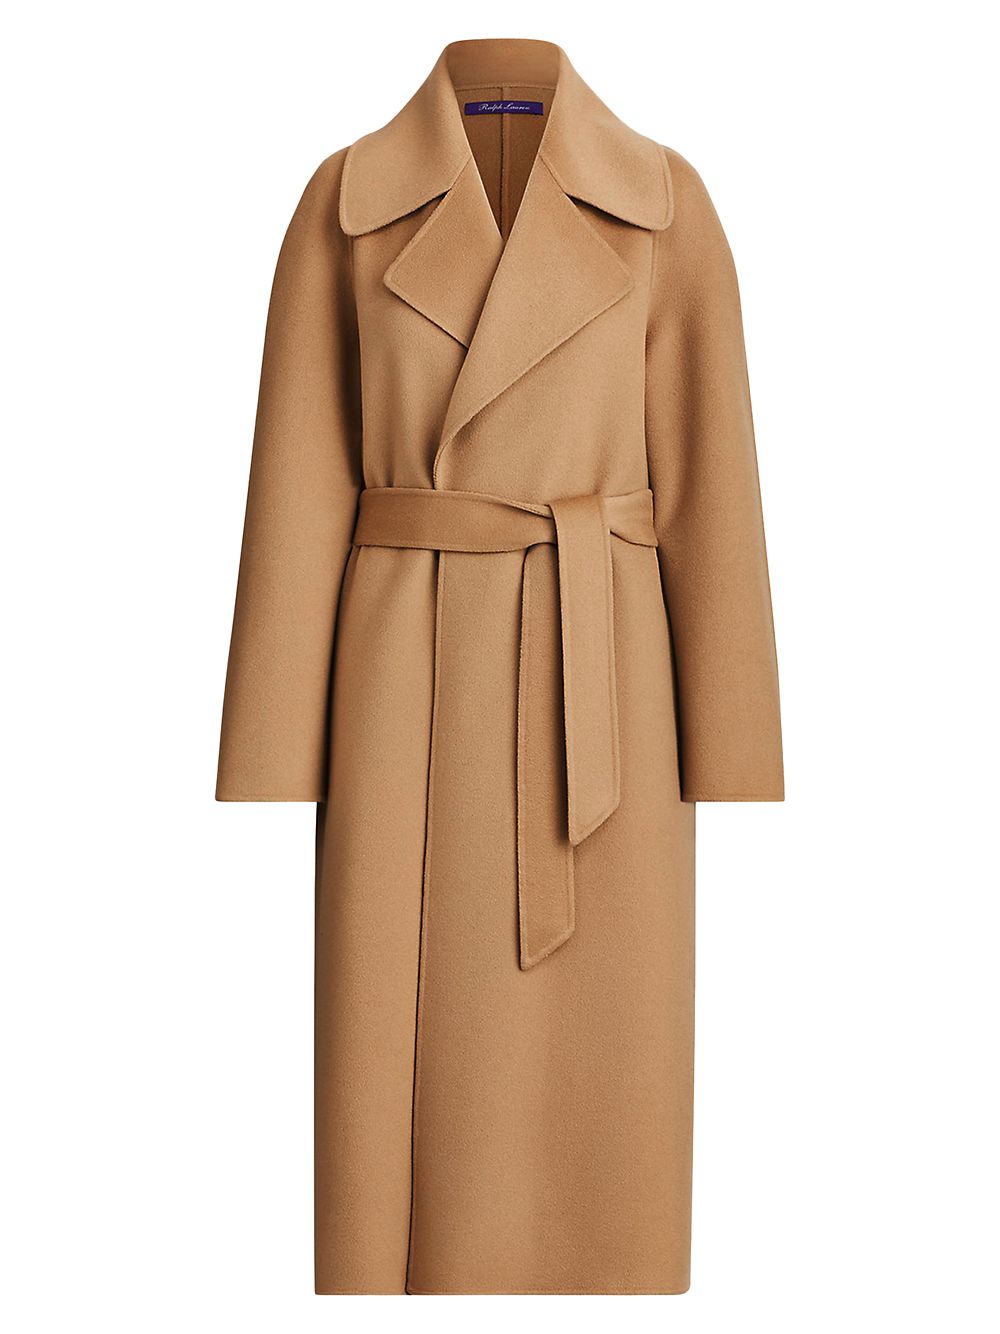 Кашемировое пальто Leonarda Ralph Lauren Collection, кэмел